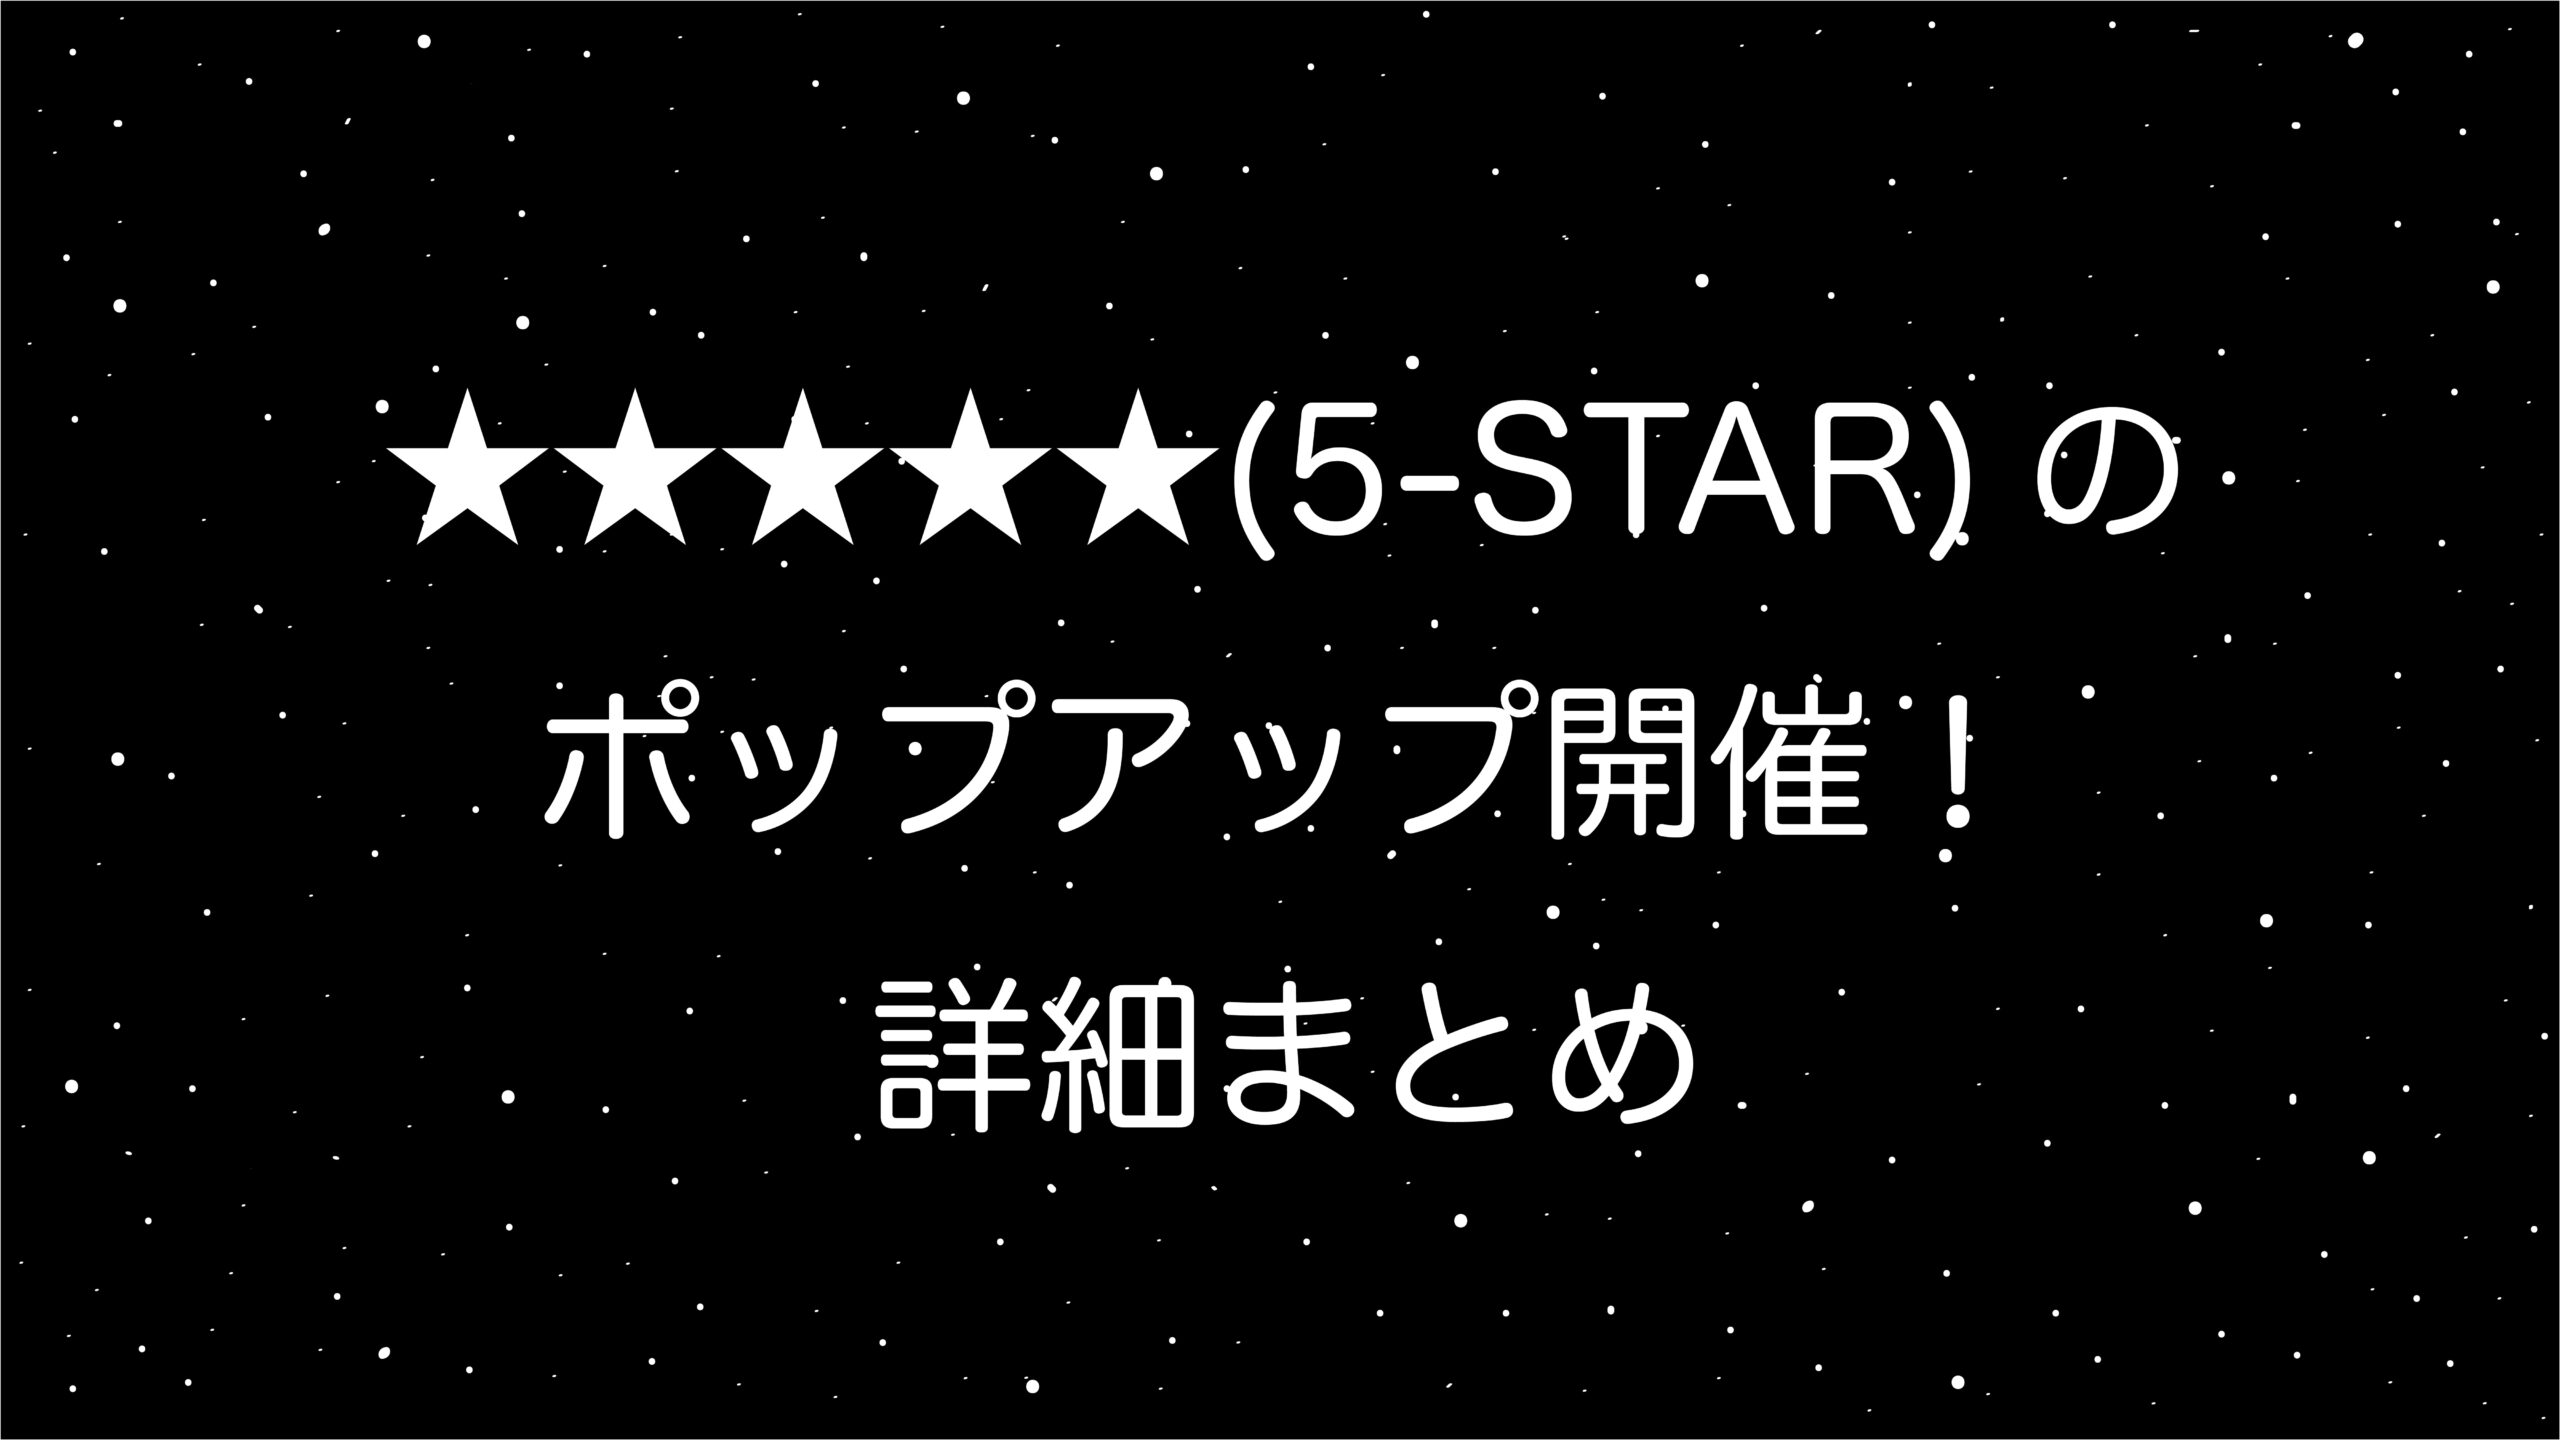 Stray Kids＜（5-STAR）＞ポップアップ「SKZ POP-UP」開催！詳細まとめ